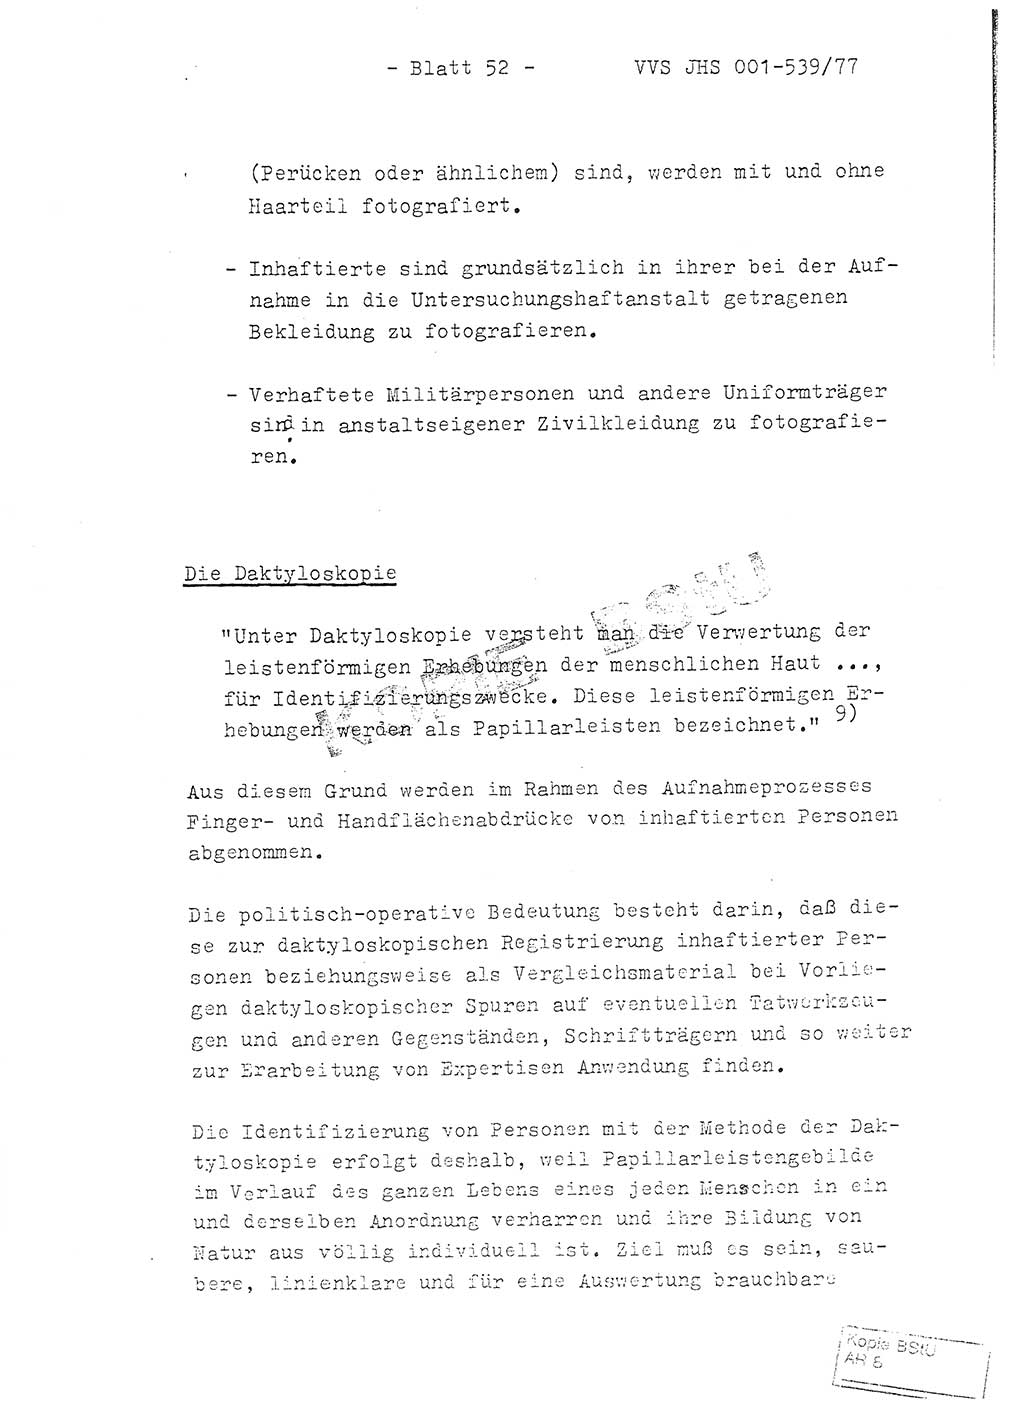 Fachschulabschlußarbeit Hauptmann Dietrich Jung (Abt. ⅩⅣ), Leutnant Klaus Klötzner (Abt. ⅩⅣ), Ministerium für Staatssicherheit (MfS) [Deutsche Demokratische Republik (DDR)], Juristische Hochschule (JHS), Vertrauliche Verschlußsache (VVS) 001-539/77, Potsdam 1978, Seite 52 (FS-Abschl.-Arb. MfS DDR JHS VVS 001-539/77 1978, S. 52)